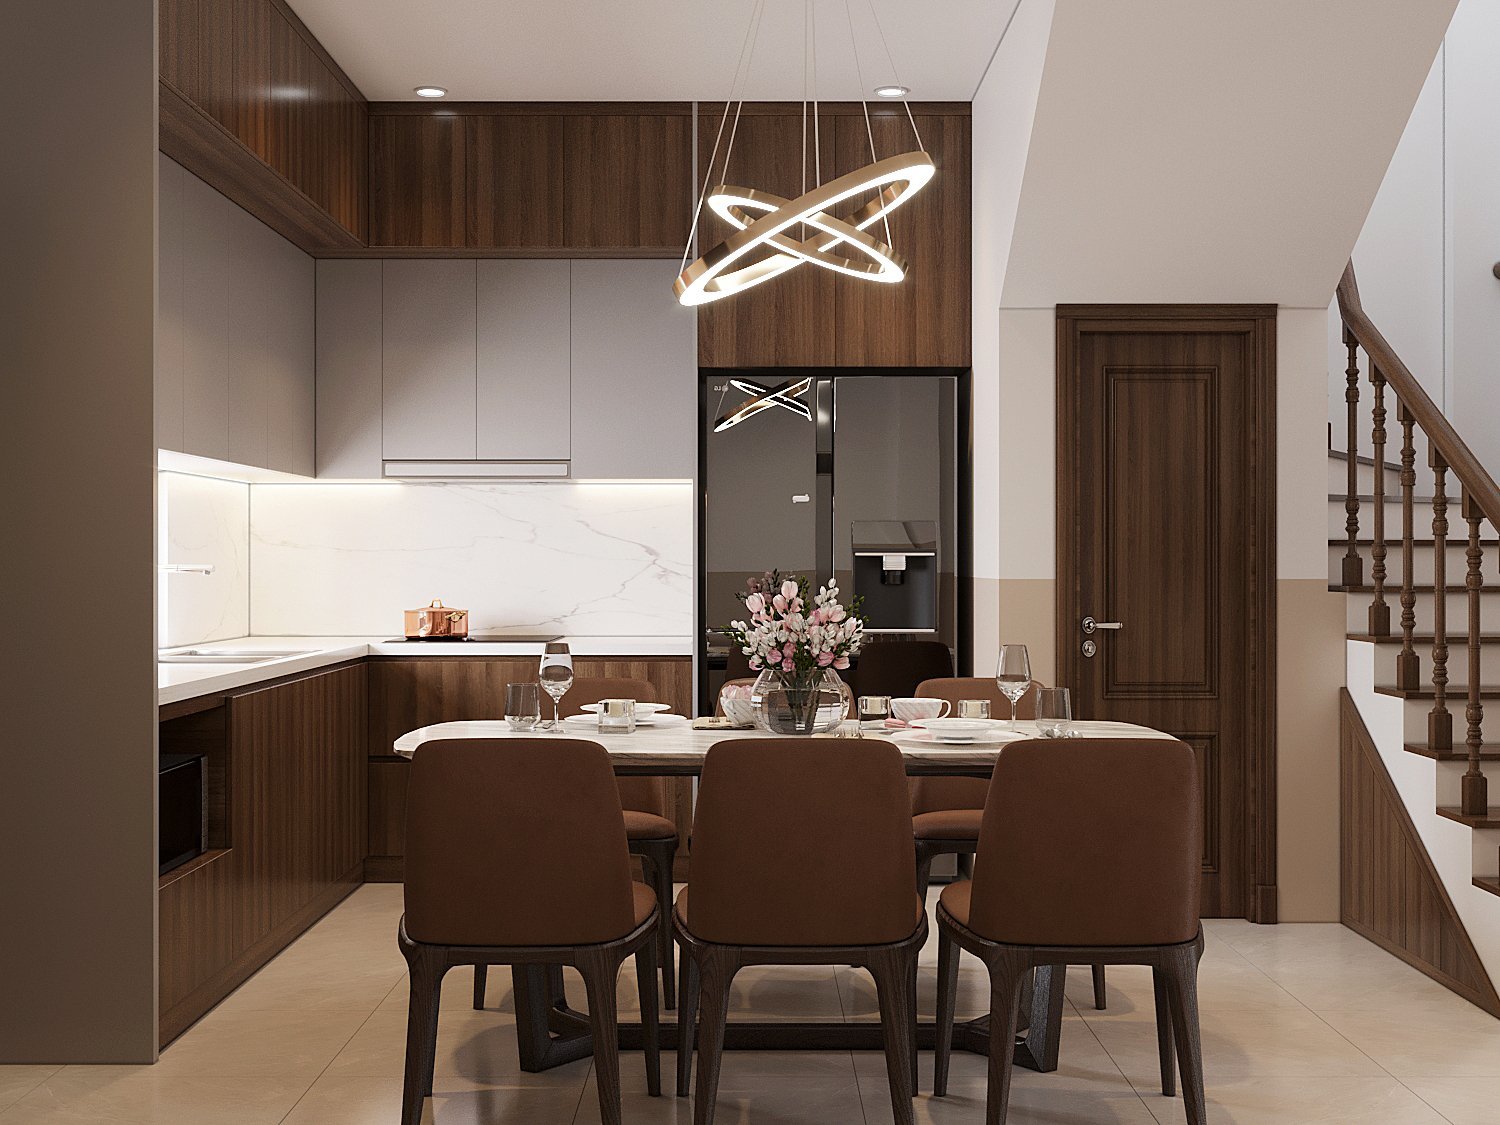 Ánh sáng cho phòng bếp được thiết kế vừa đủ, đảm bảo sự tiện lợi trong sinh hoạt hàng ngày. Đèn thả trần hiện đại giúp ấn định rõ khu vực ăn uống trong nhà phố 3 tầng.